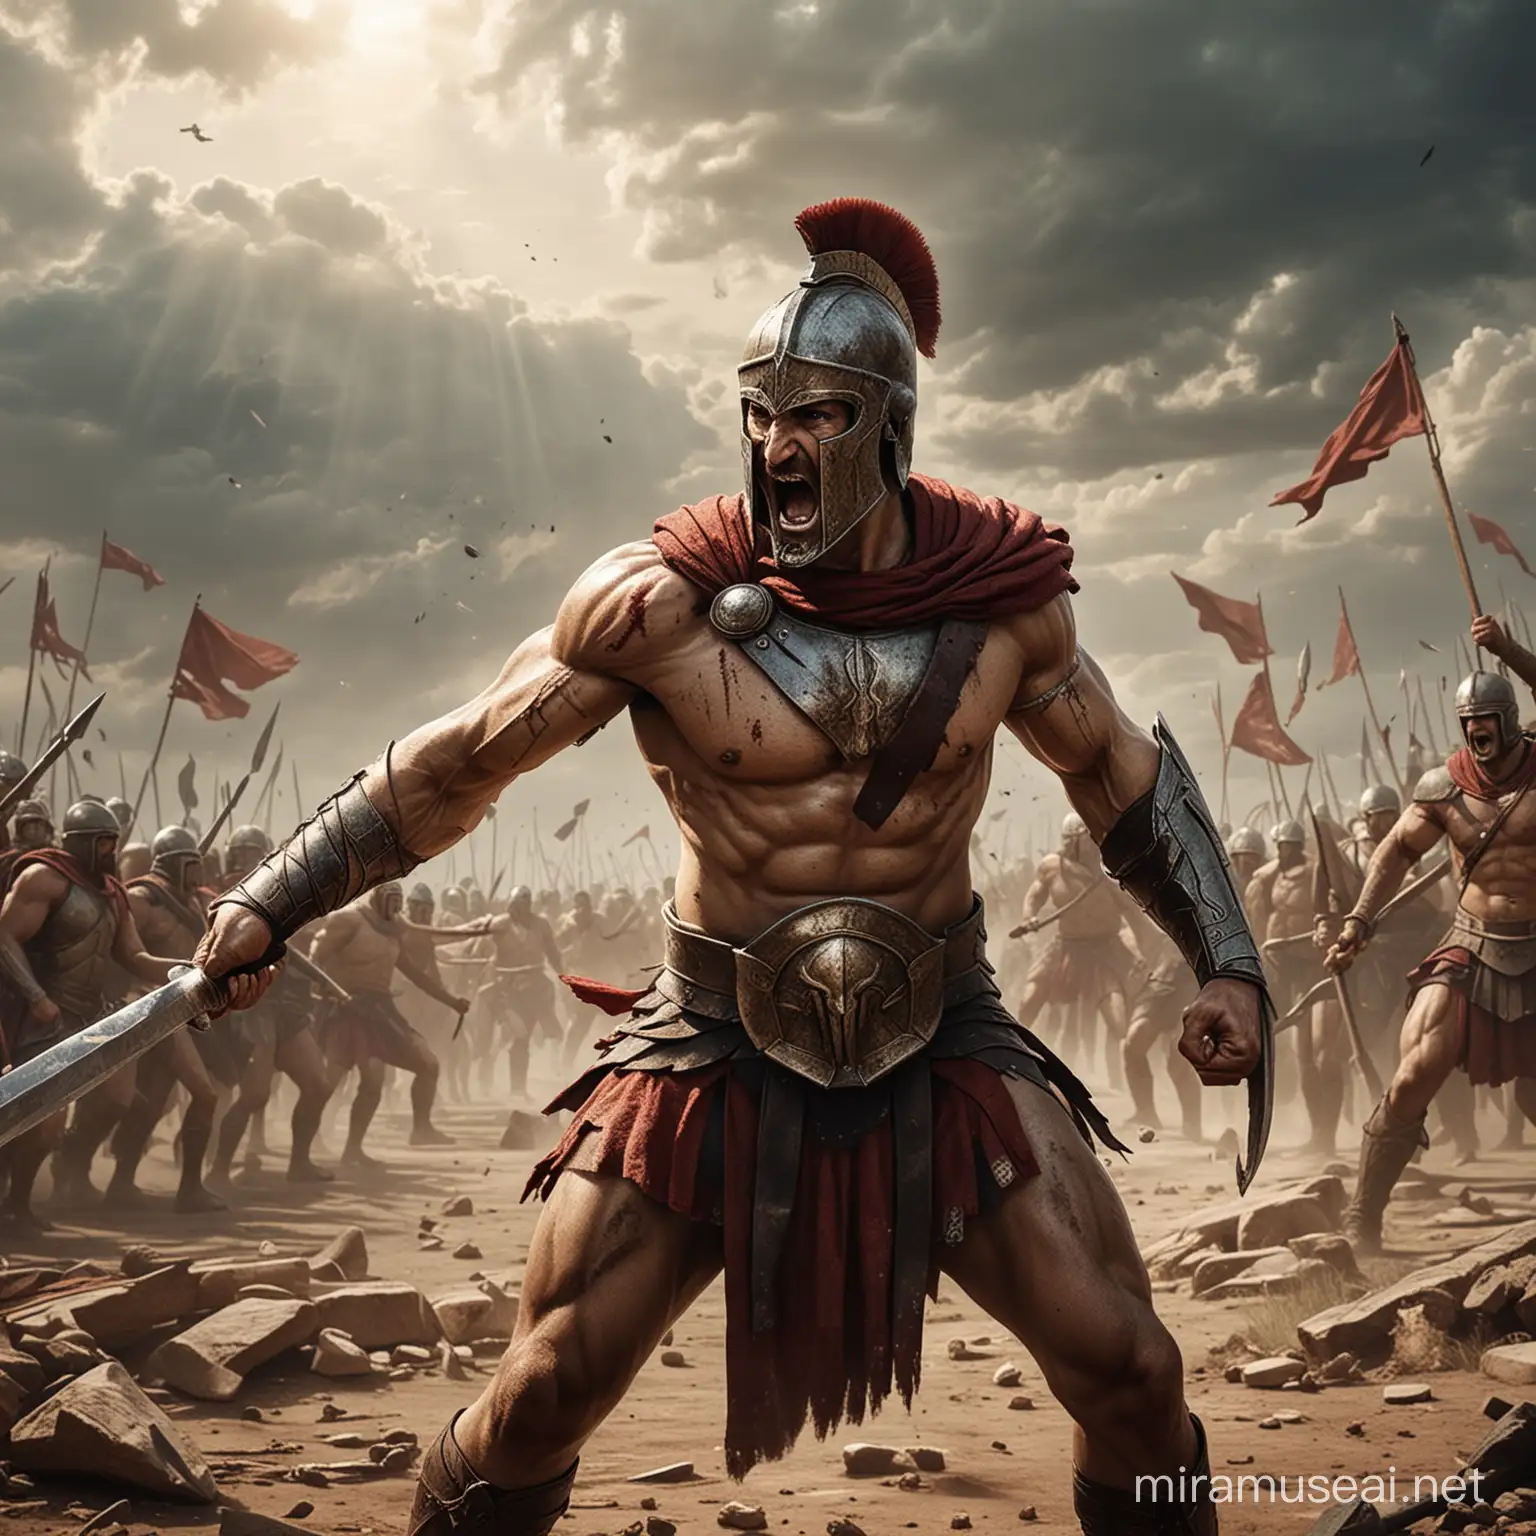 Resilient Spartan Warrior Determination in Defeat